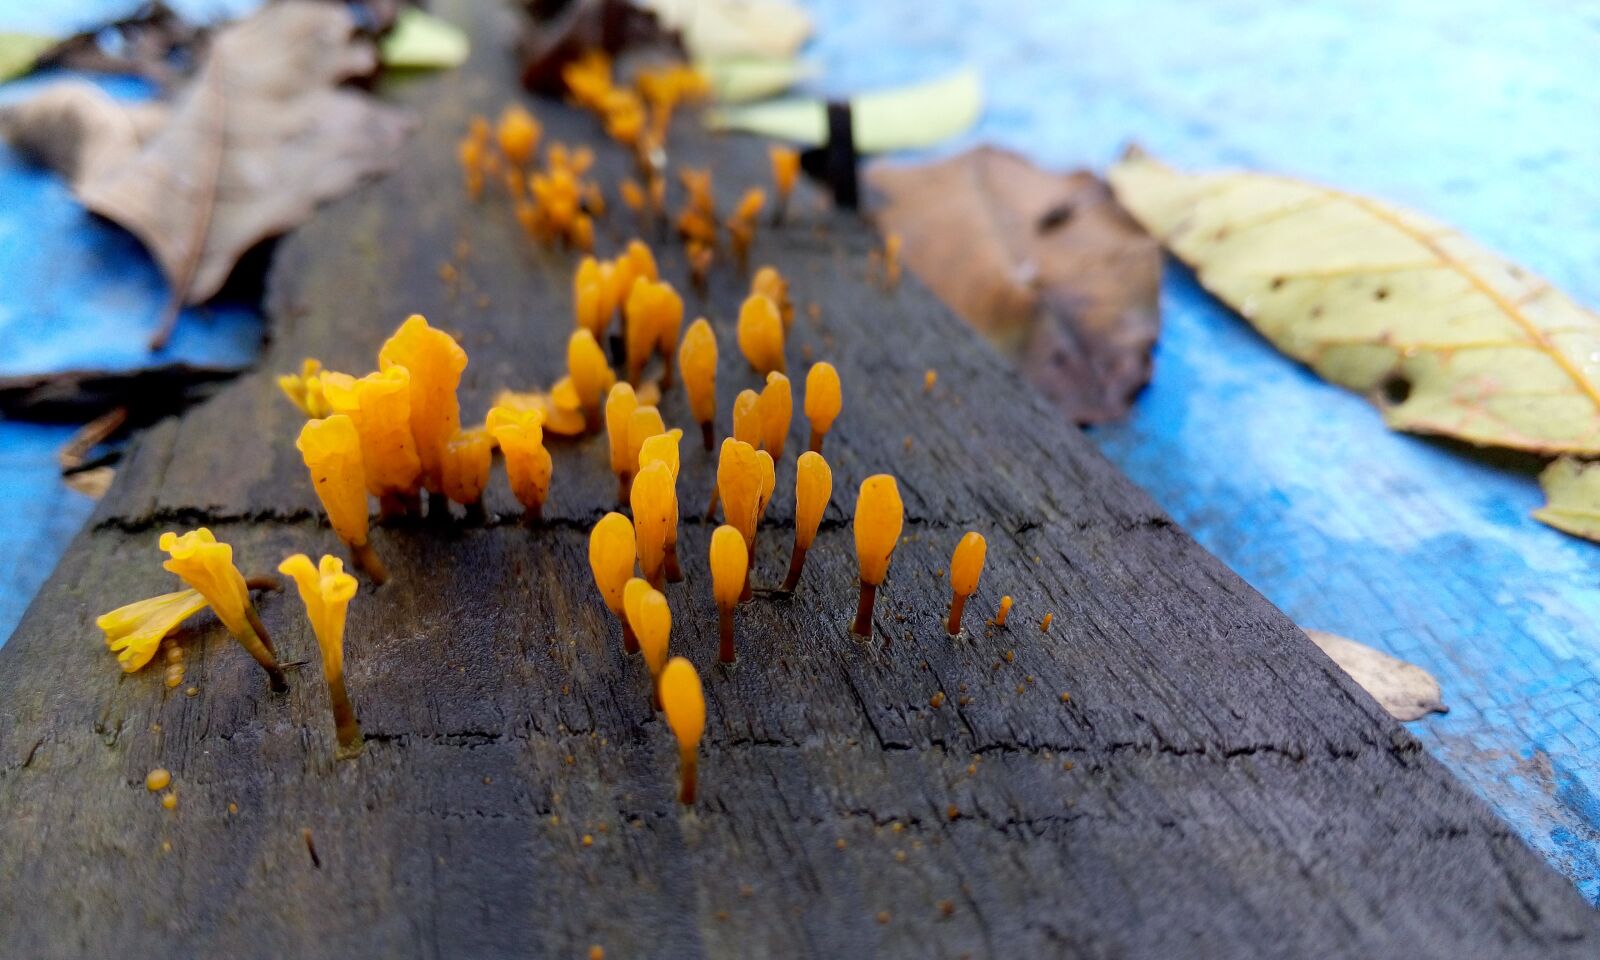 Meizu MX4 sample photo. Fungus, like a flower photography